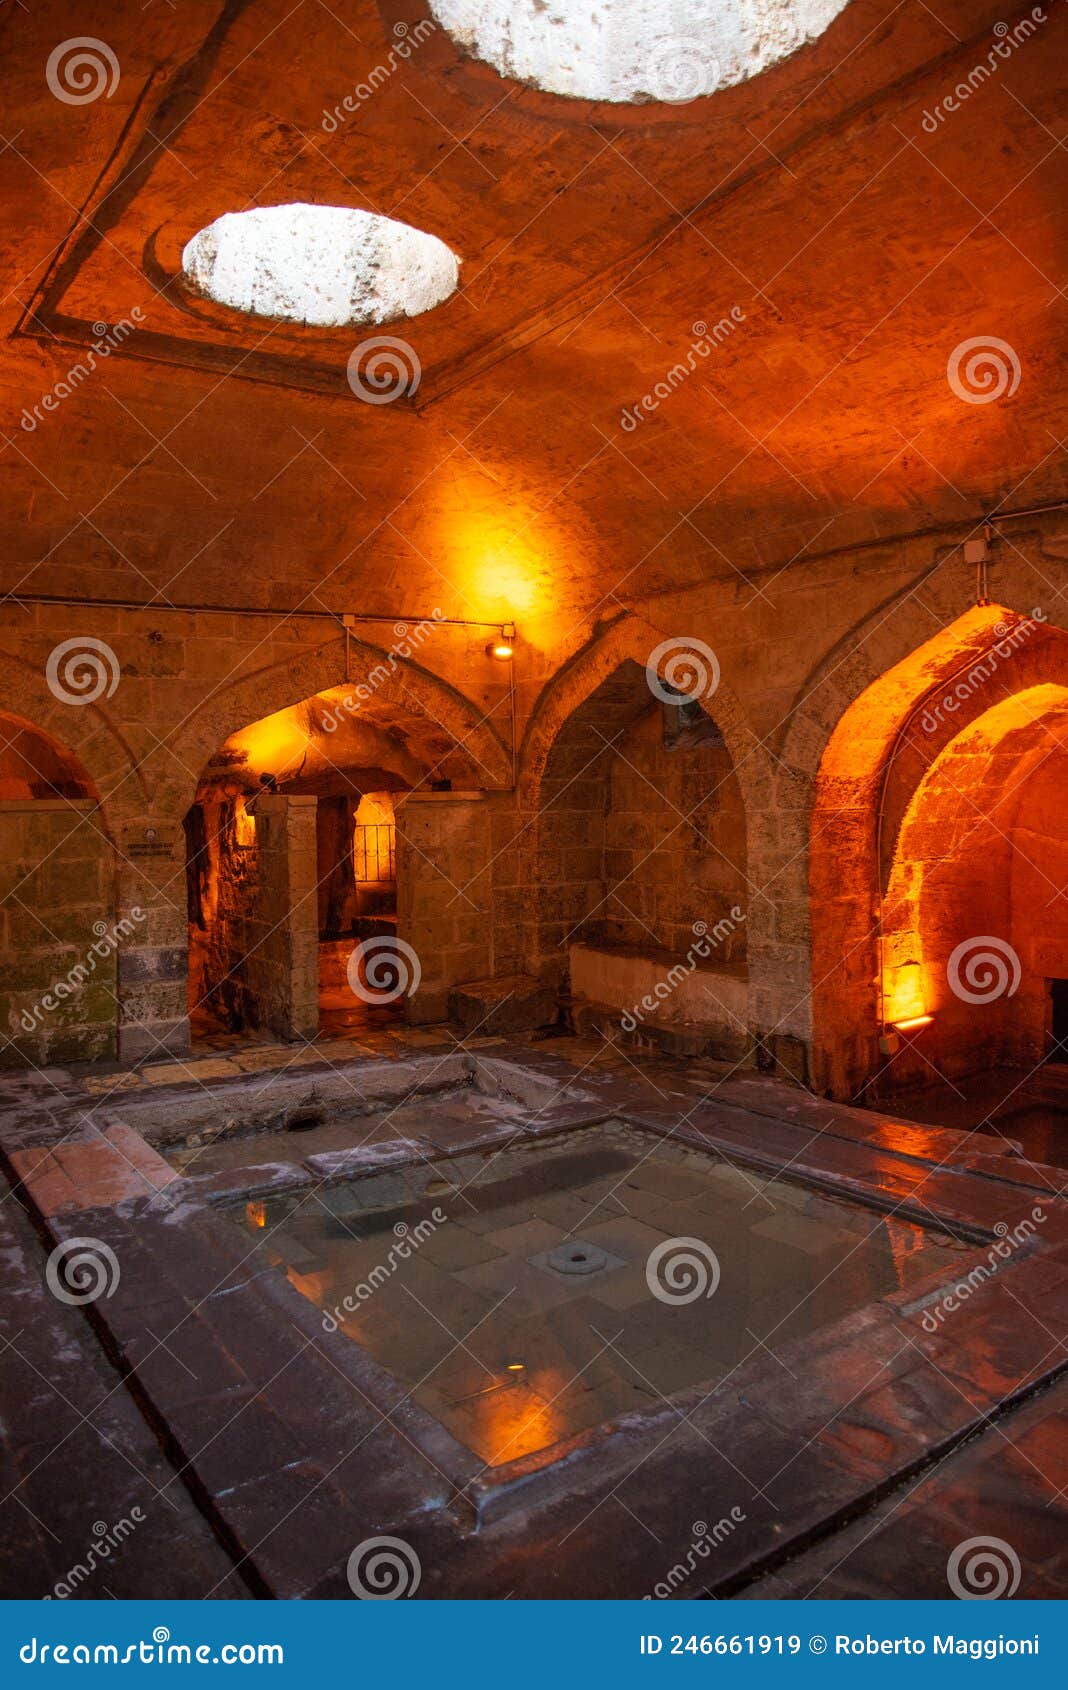 gaziantep old city, turkey, underground water cistern